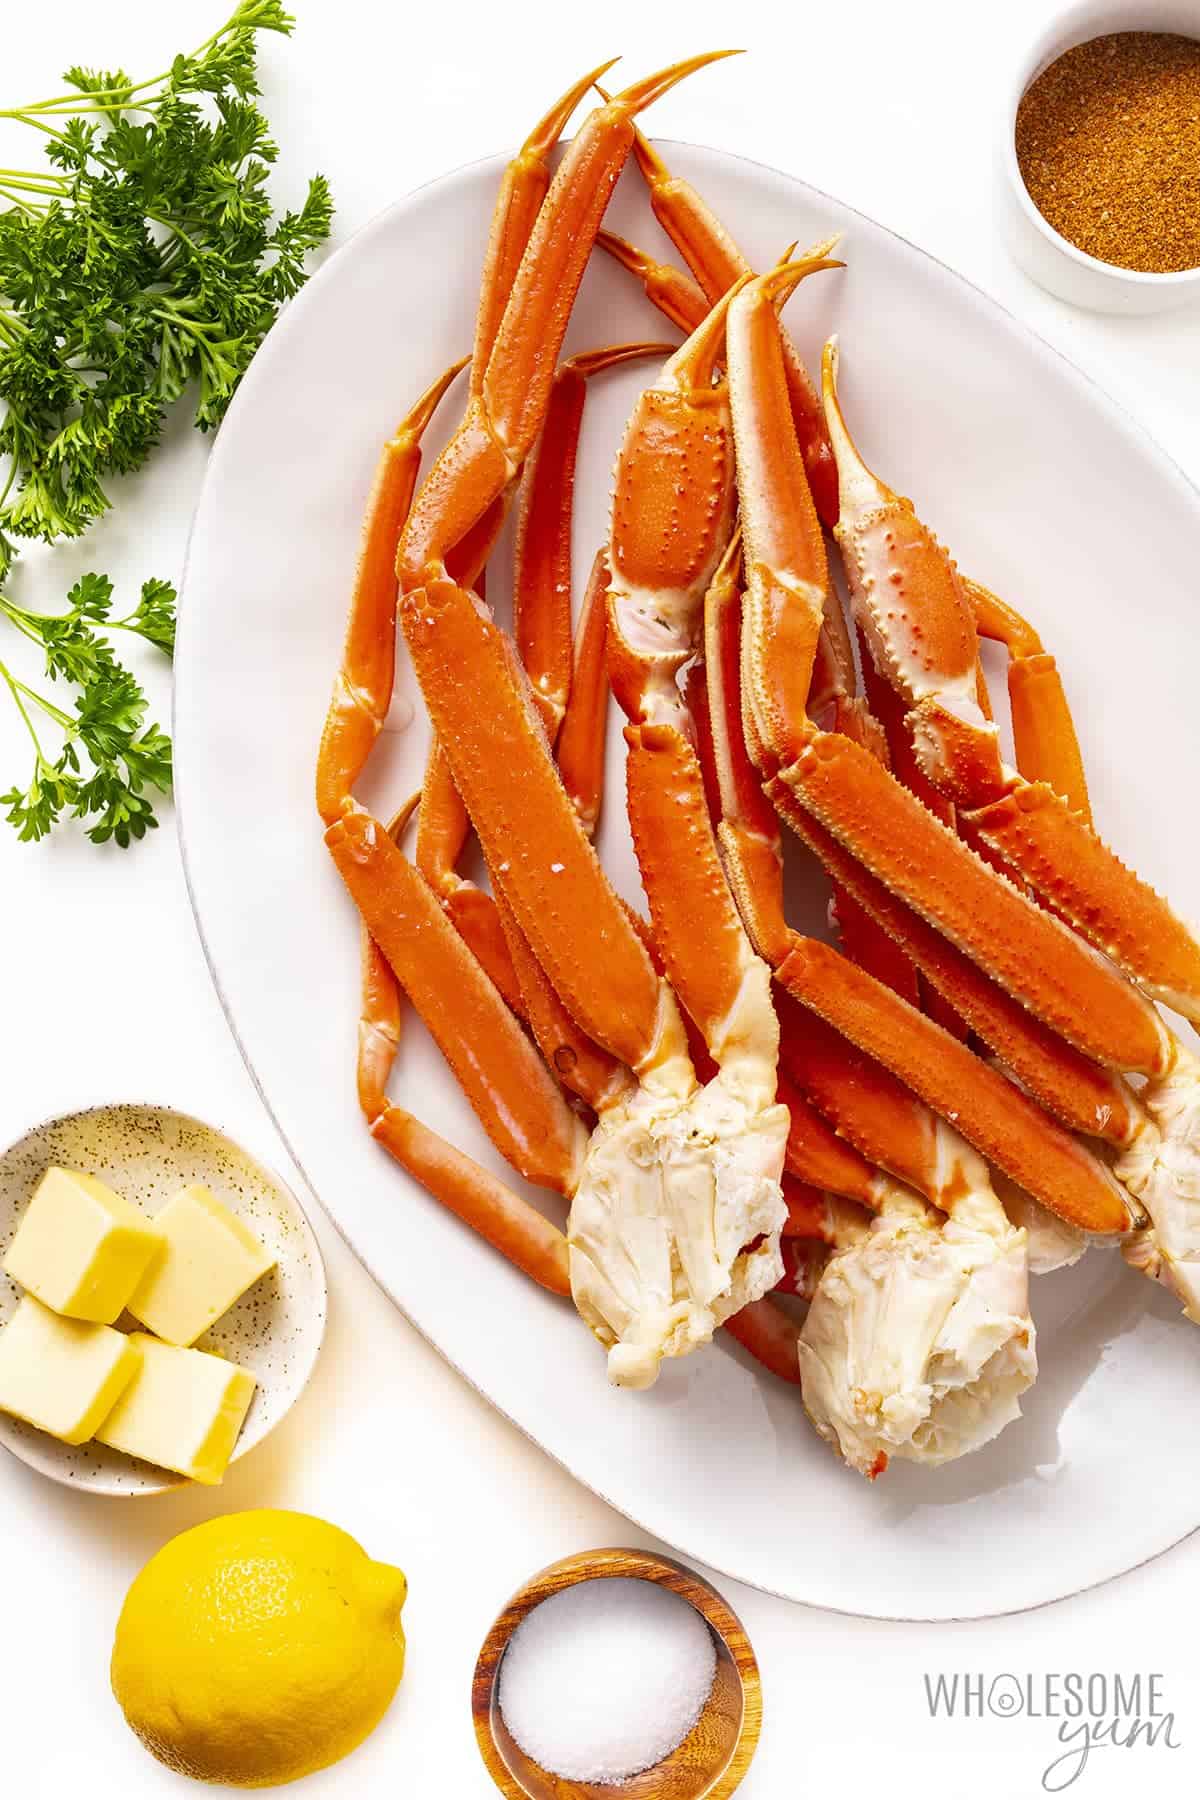 Crab legs recipe ingredients.